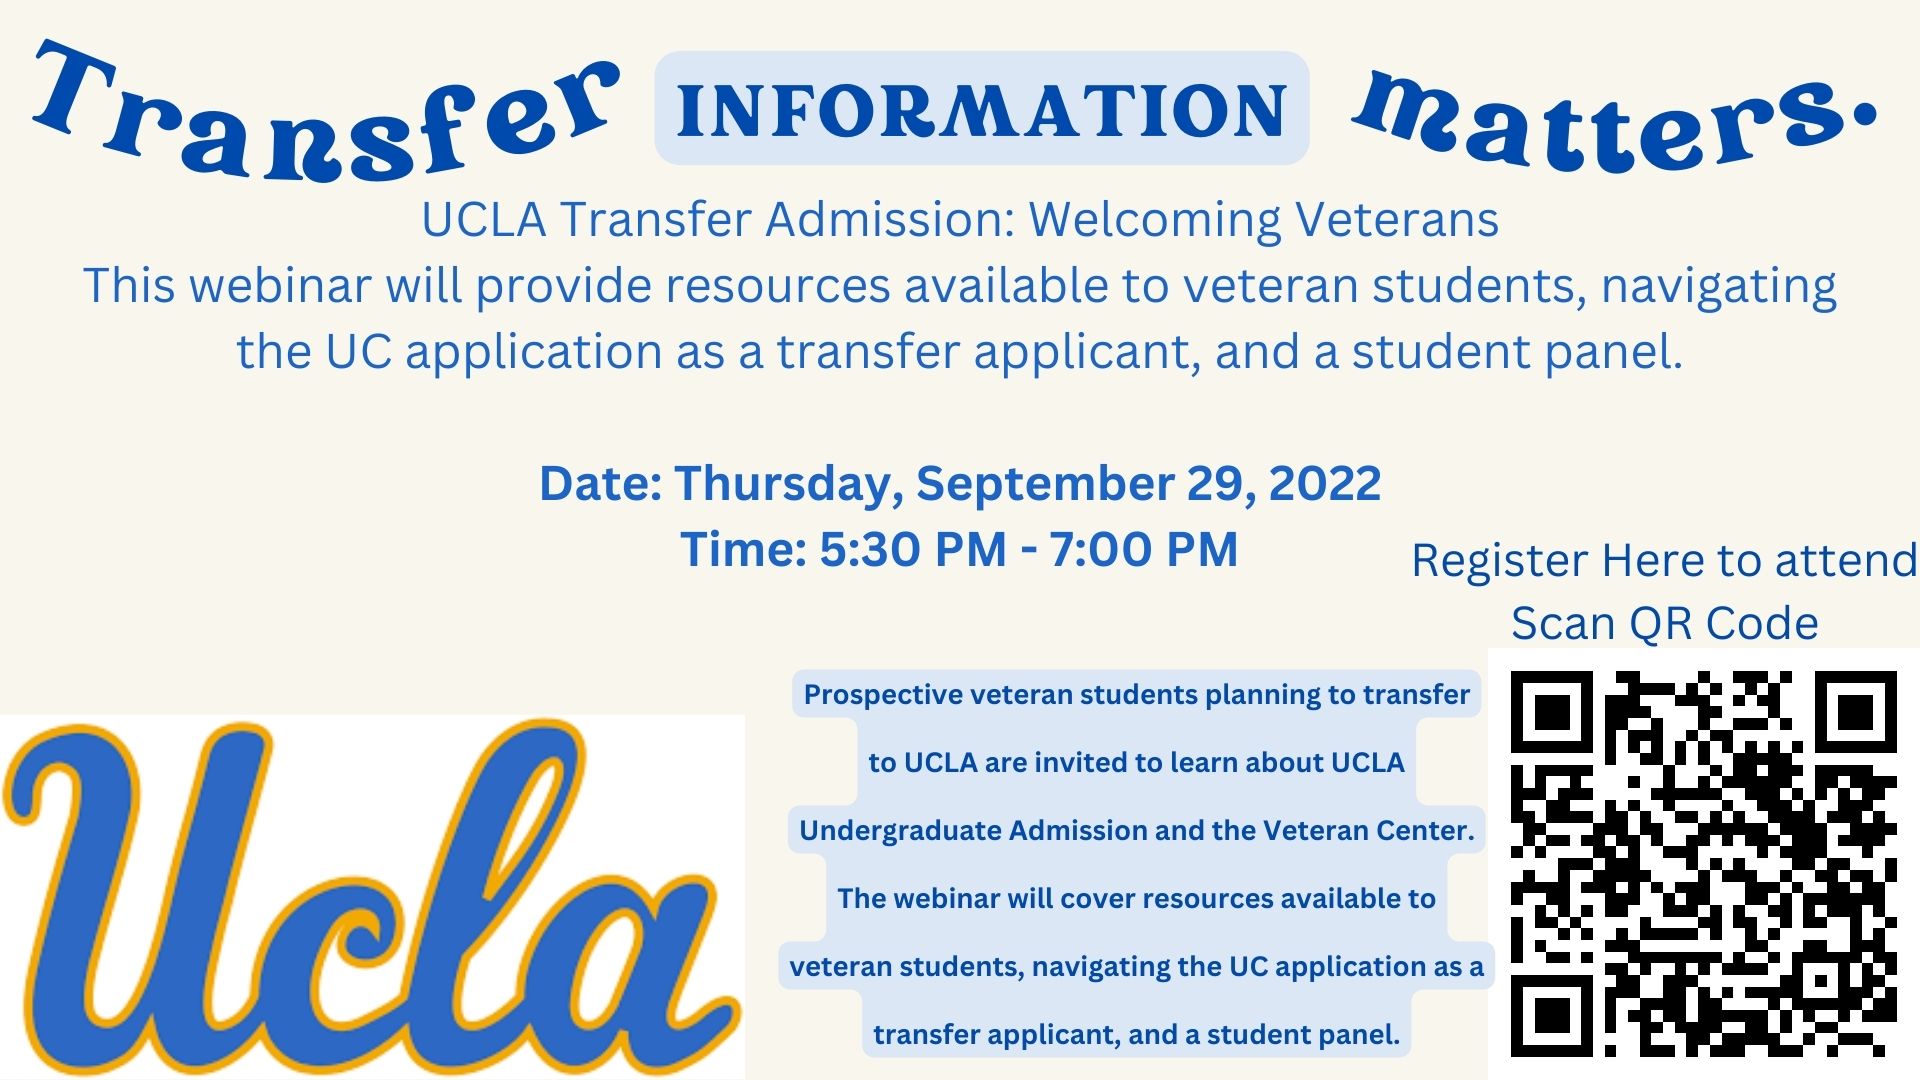 UCLA Transfer Admission: Welcoming Veterans - Thursday, September 29, 2022